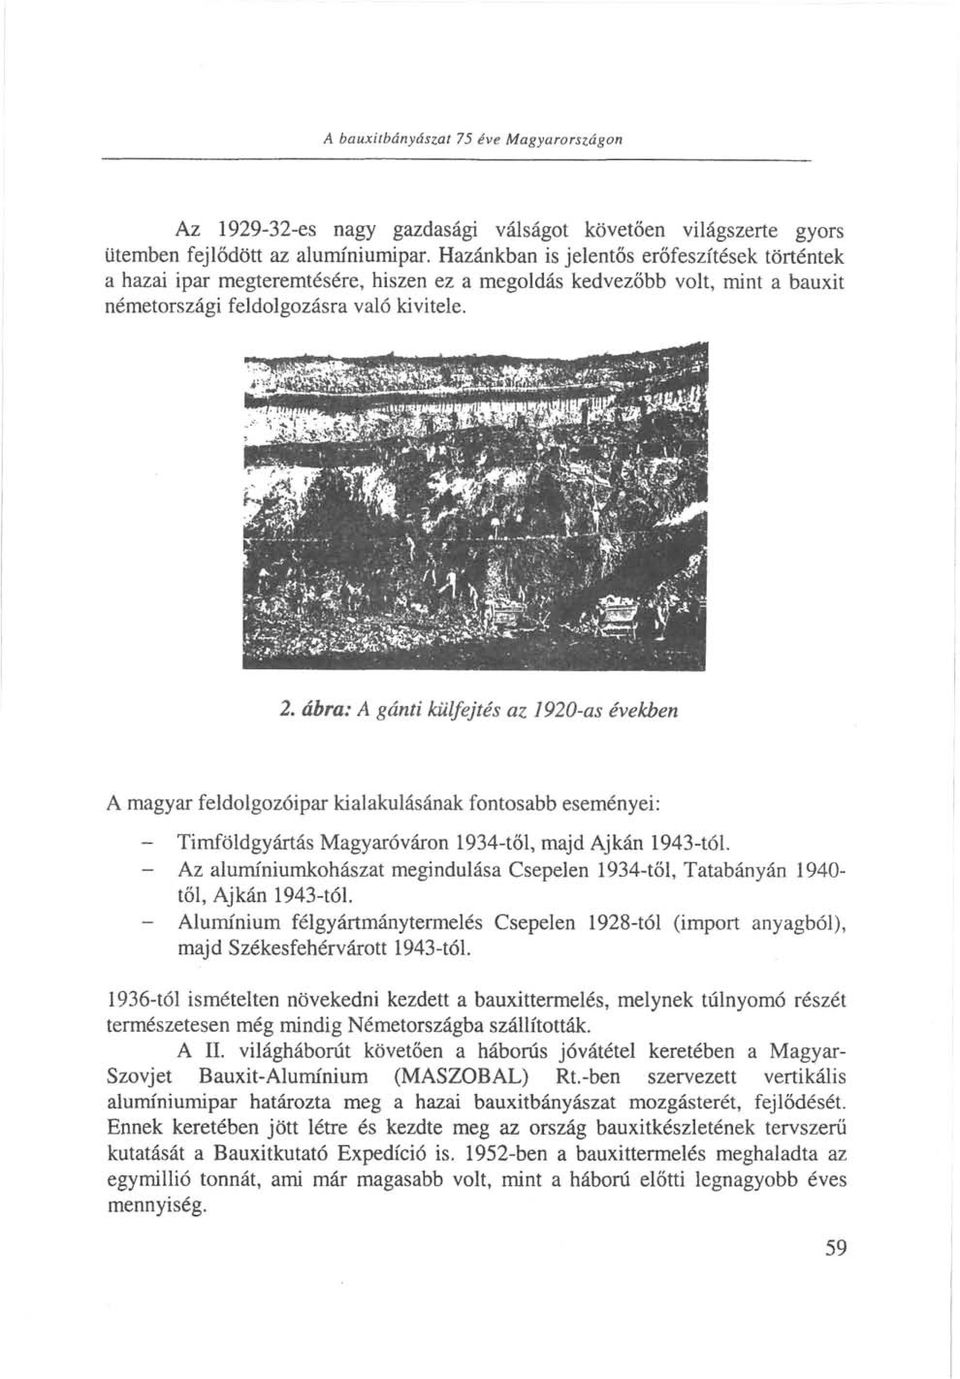 ábra: A gánti külfejtés az 1920-as években A magyar feldolgozóipar kialakulásának fontosabb eseményei: - Timföldgyártás Magyaróváron 1934-től, majd Ajkán 1943-tól.